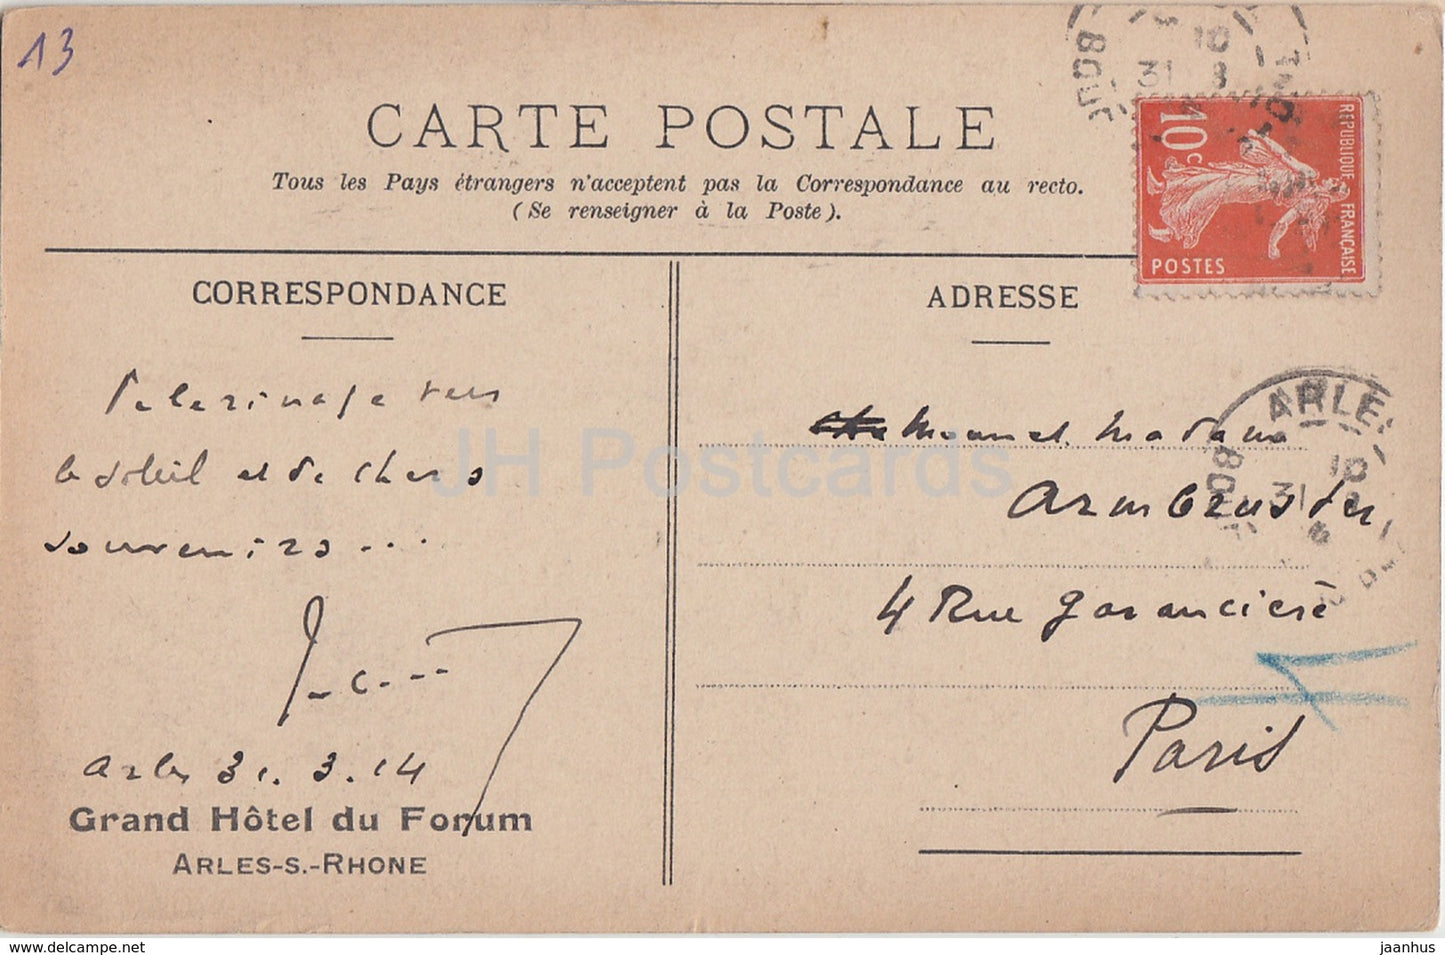 Arles - Le Portail de Saint Trophime - Grand Hotel du Forum - Kreuzgang - alte Postkarte - 1914 - Frankreich - gebraucht